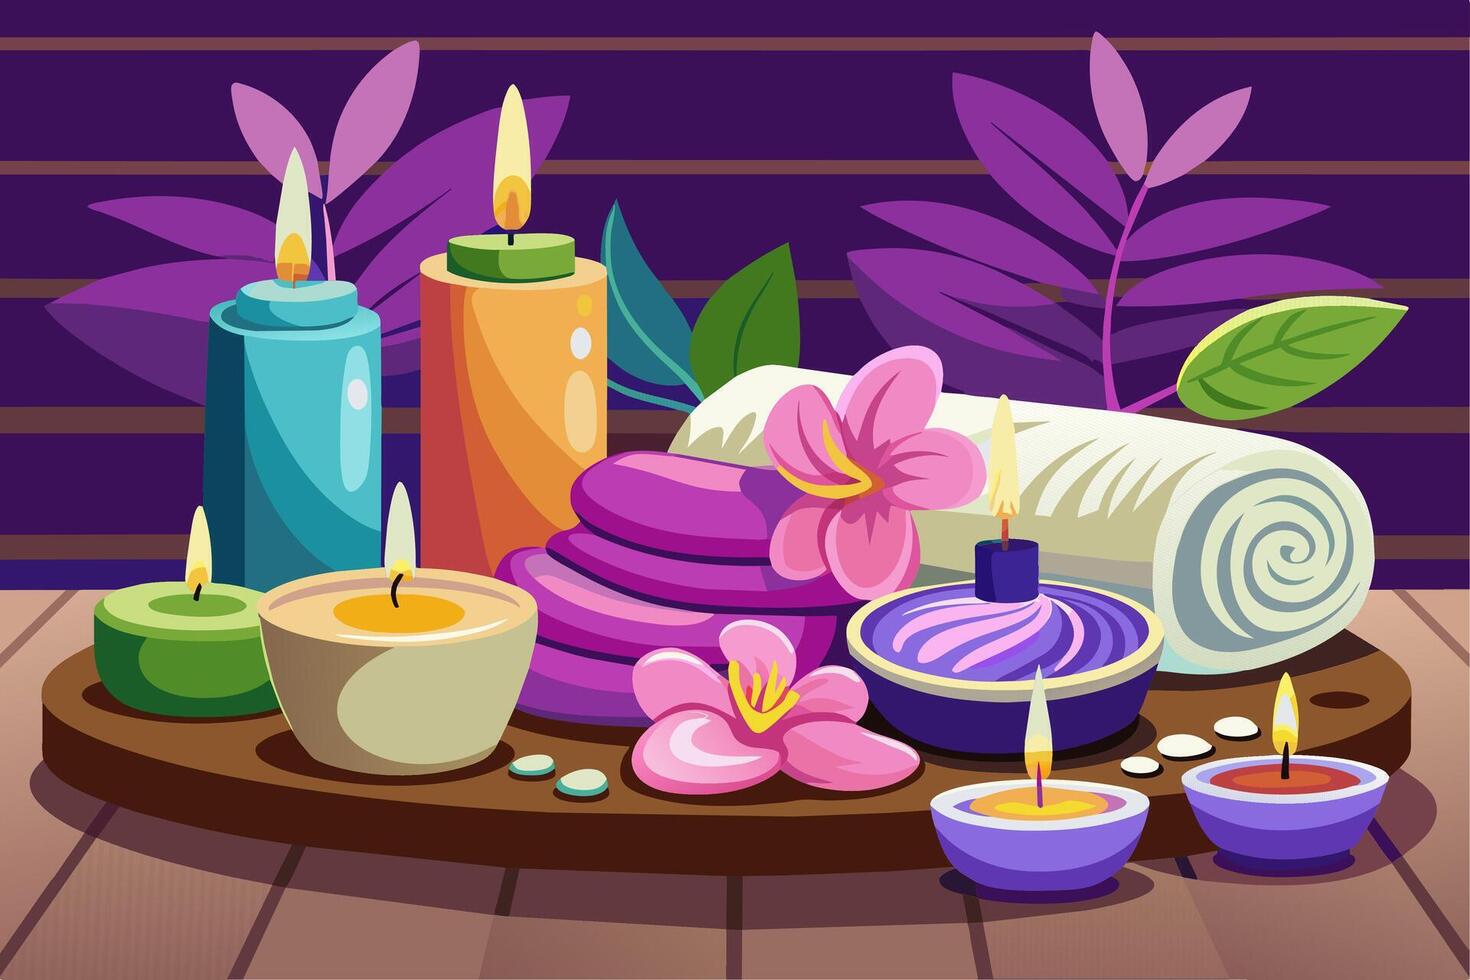 elegante púrpura spa ajuste con iluminado velas, flores, toallas calmante bienestar retirada para relajación. concepto de lujo tailandés spa, tranquilidad, indulgencia. gráfico ilustración. imprimir, diseño elemento vector